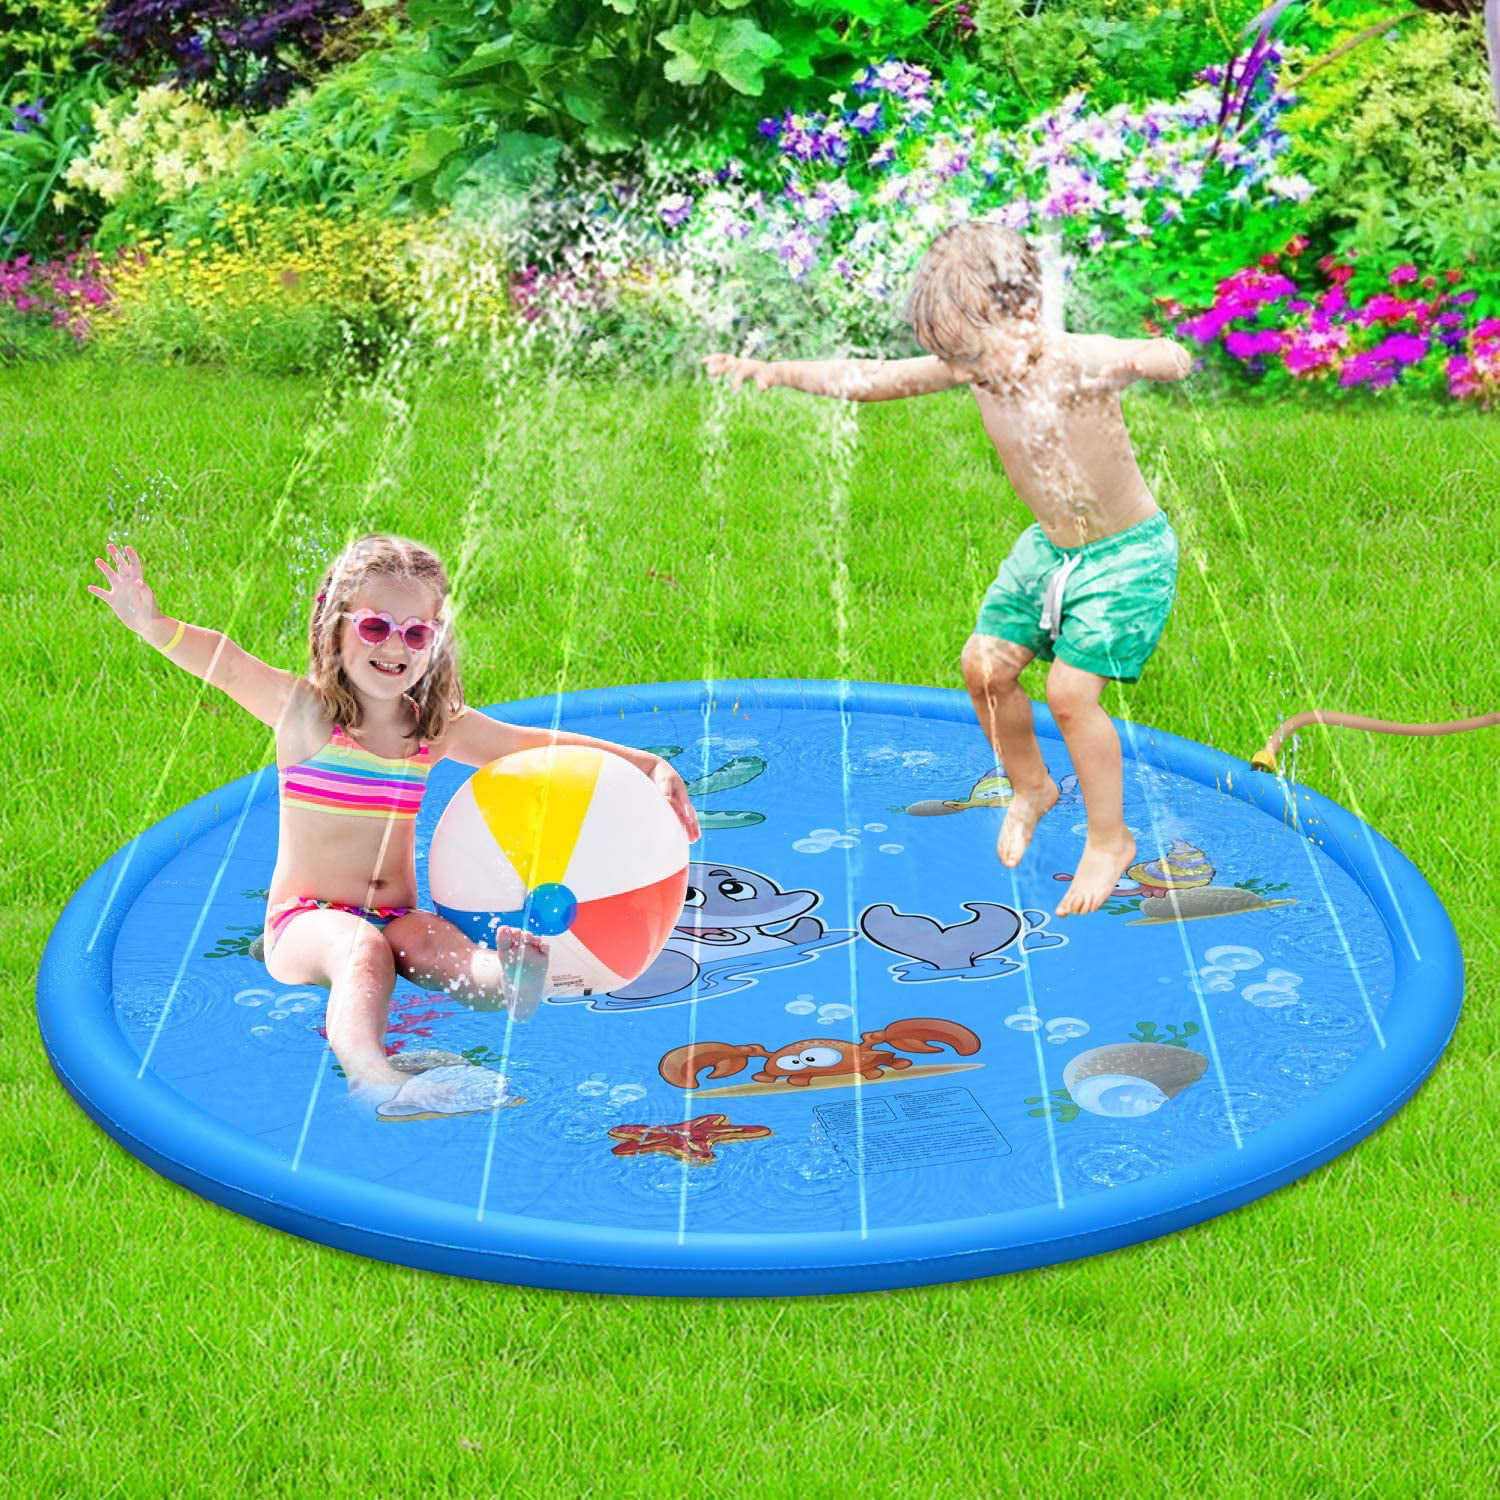 Sprinkler Splash Pad Play Mat Center Toddler Pool Water Toy Outdoor Fun Ring 